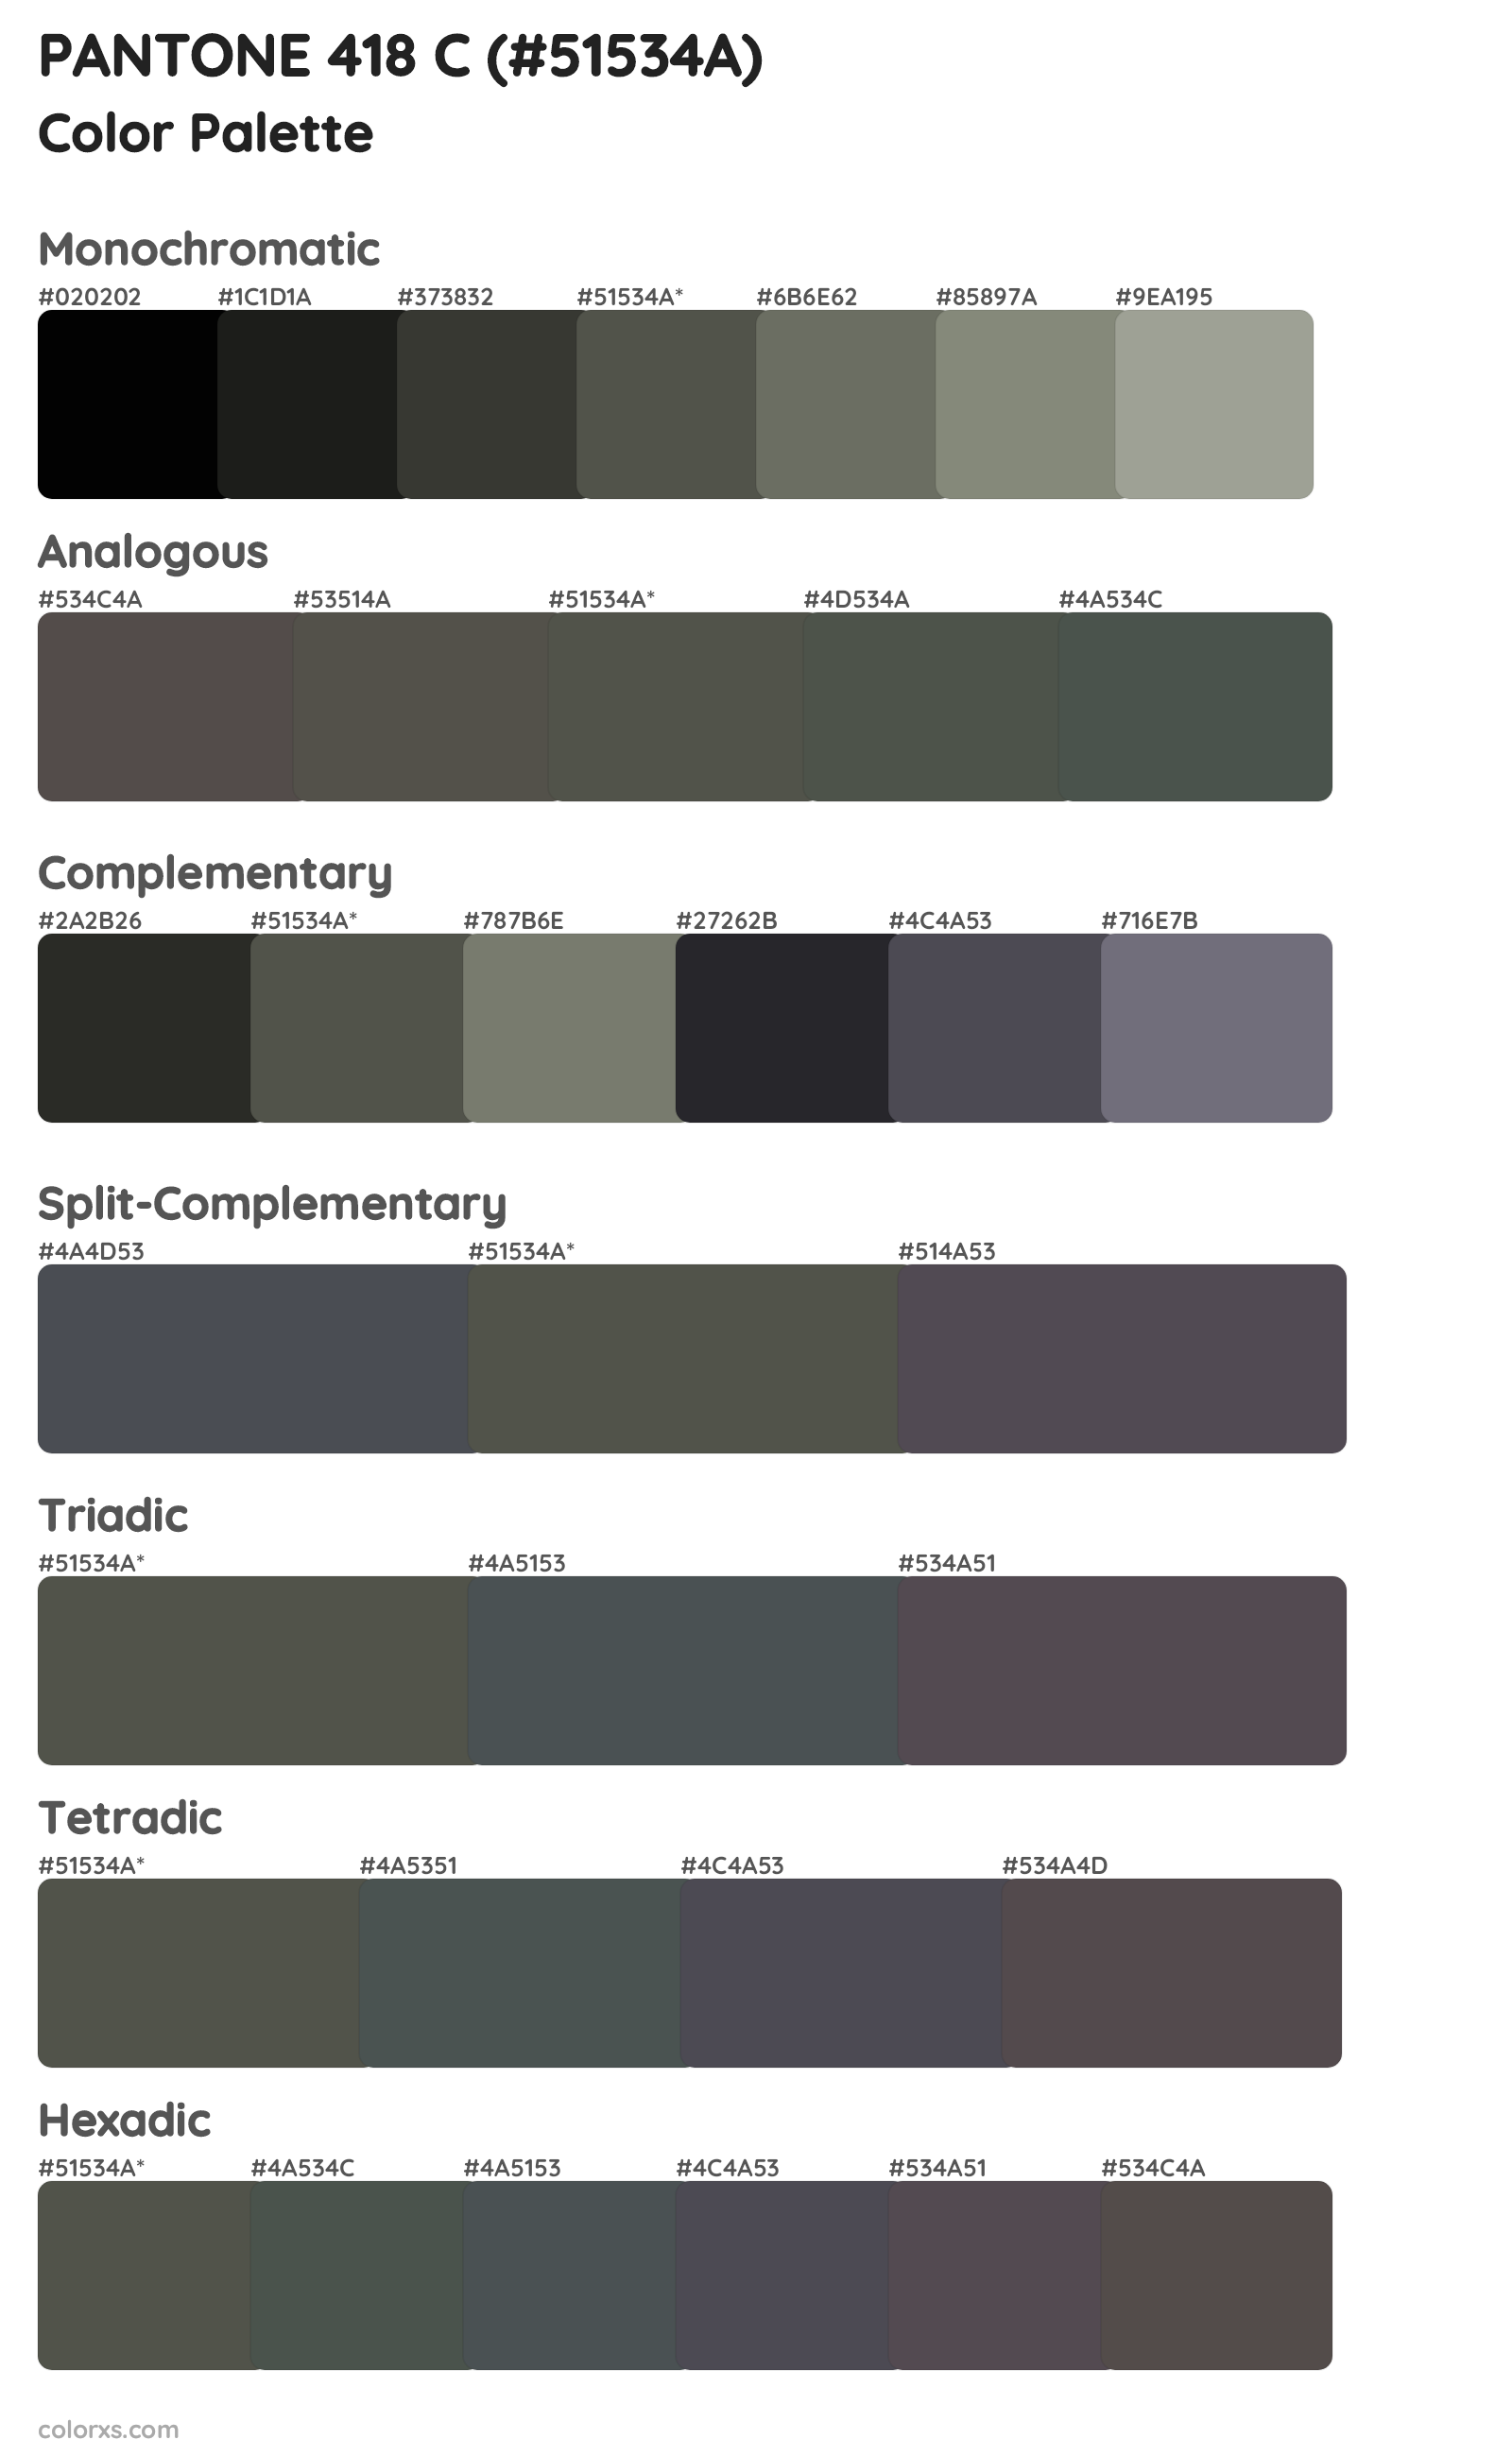 PANTONE 418 C Color Scheme Palettes